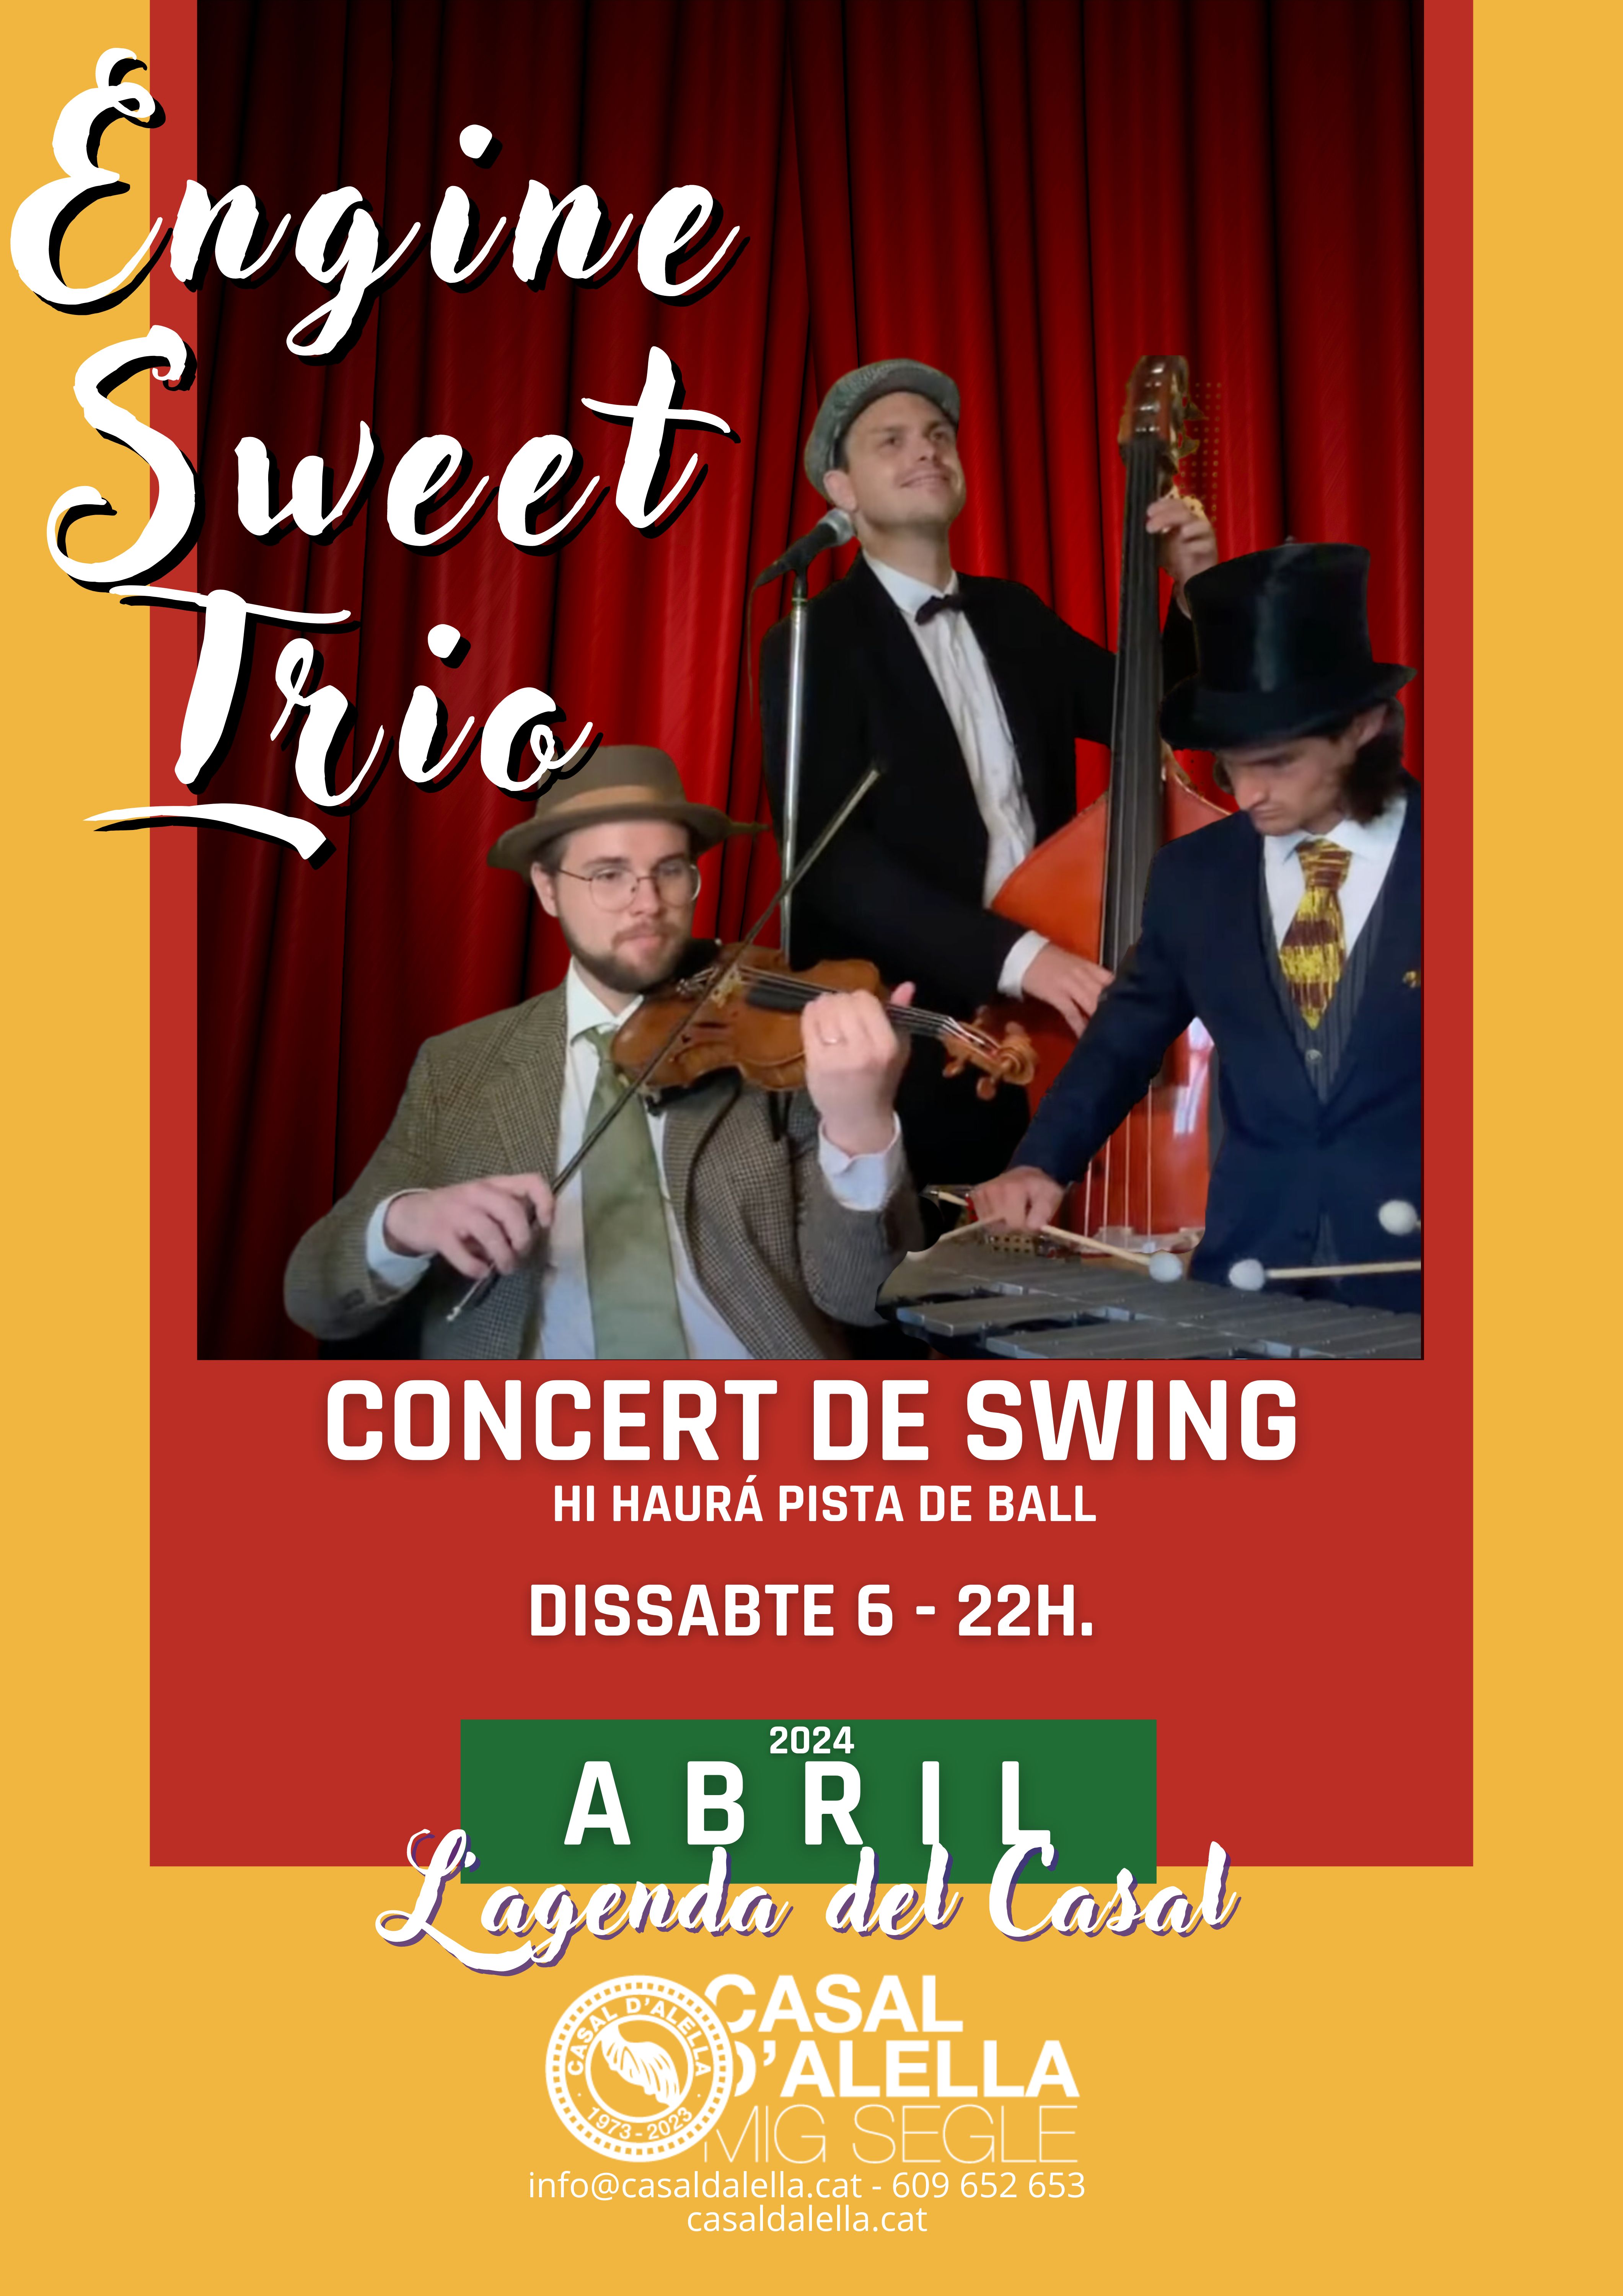 Concert de swing amb Engine Sweet Trio